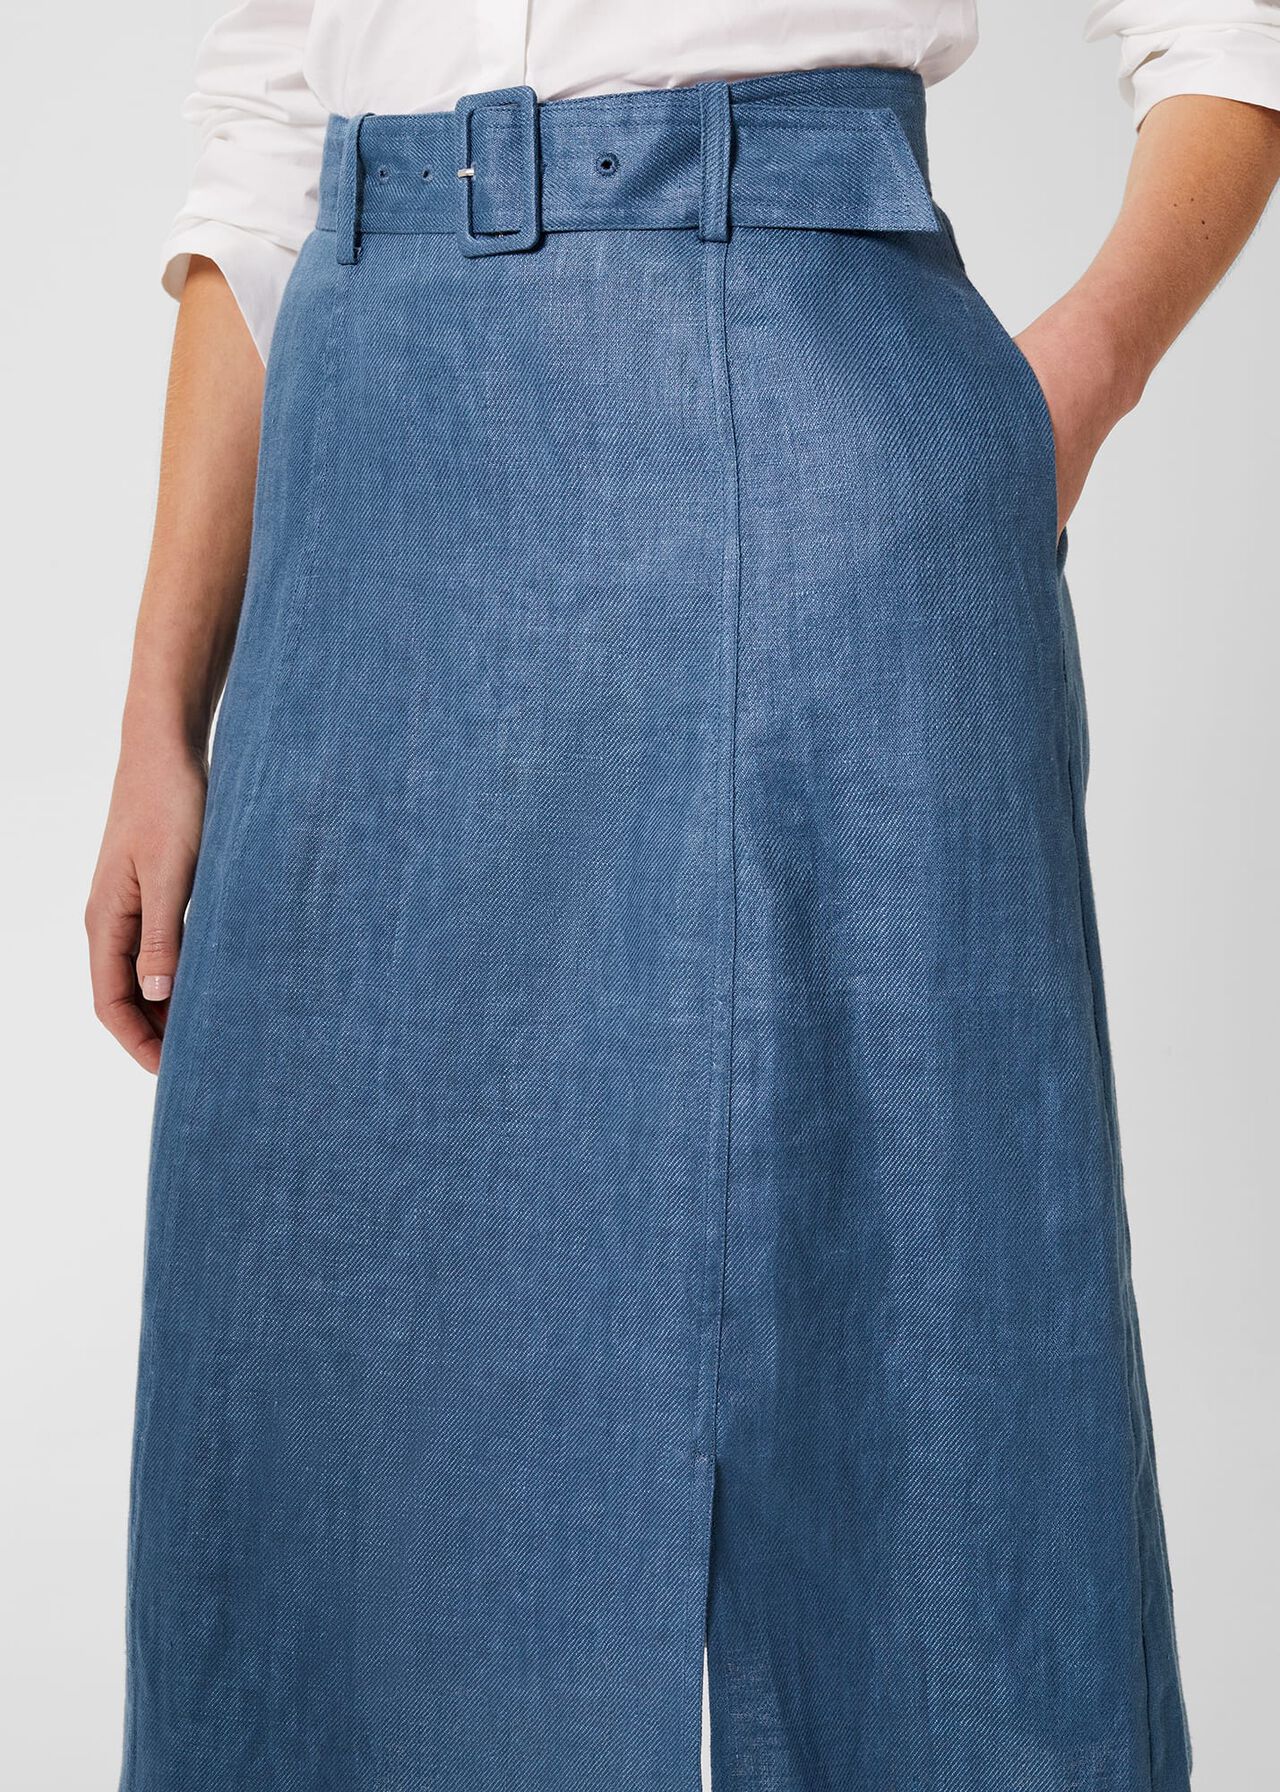 Justine Linen Skirt , Blue, hi-res